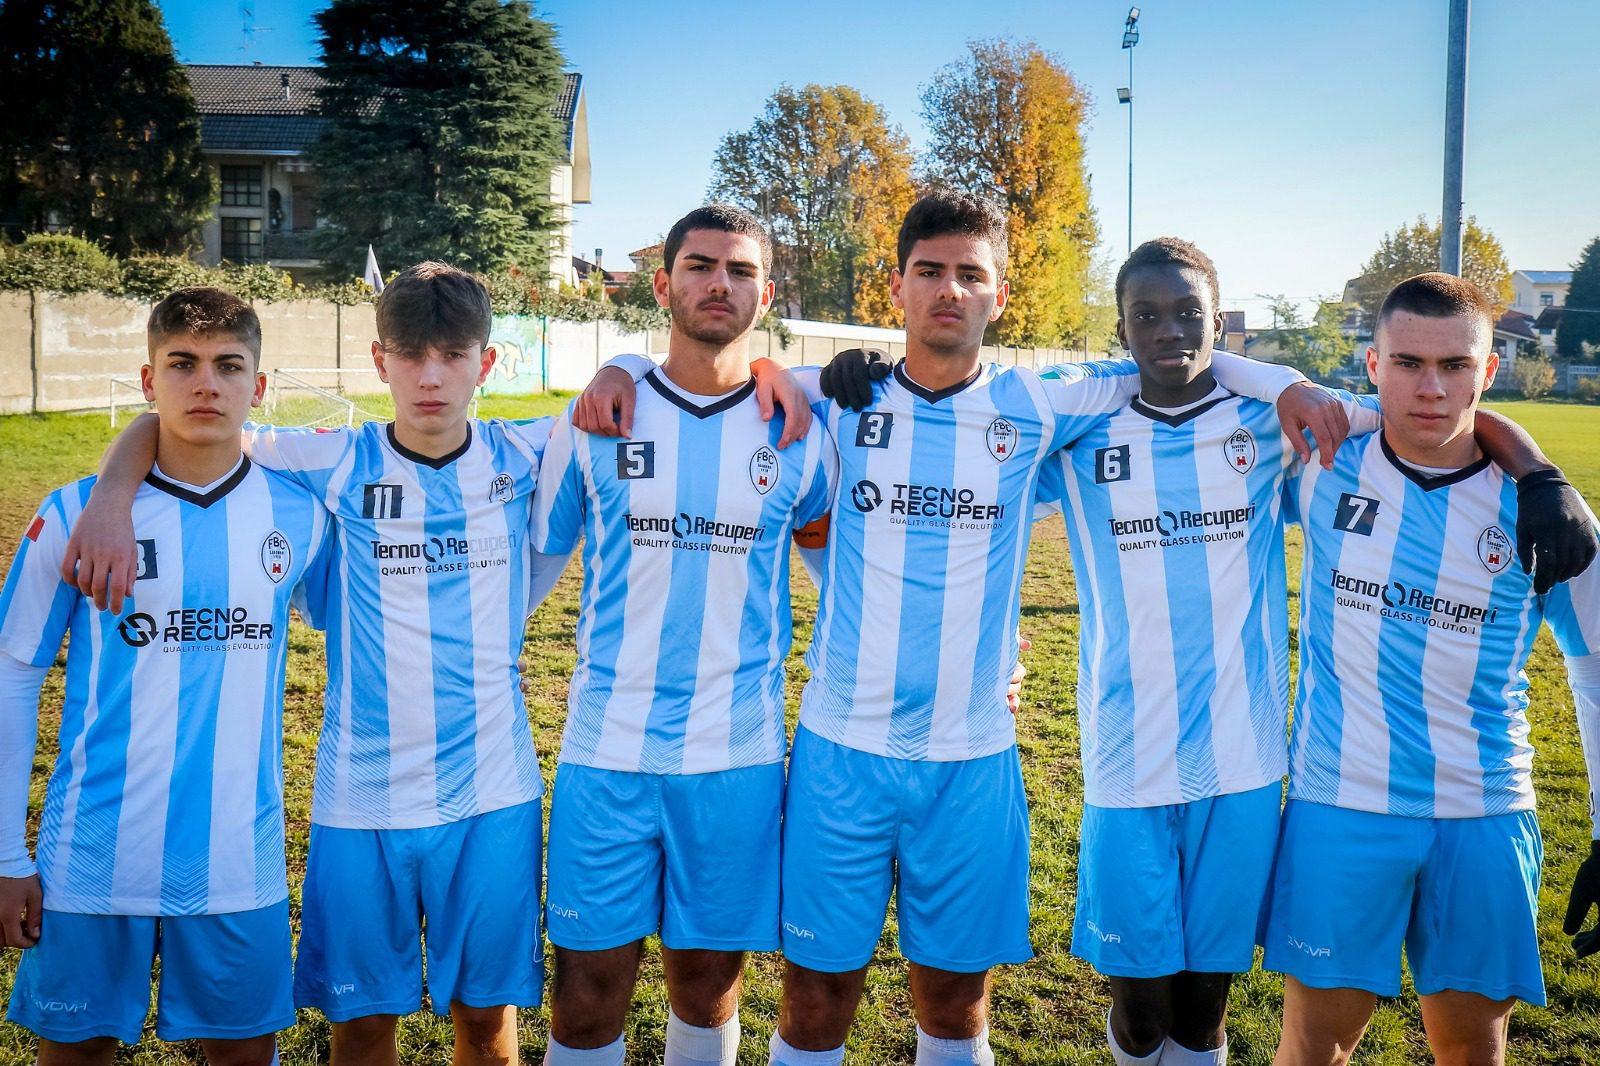 Calcio giovanile, convocati sei giocatori del Fbc Saronno per la rappresentativa U17